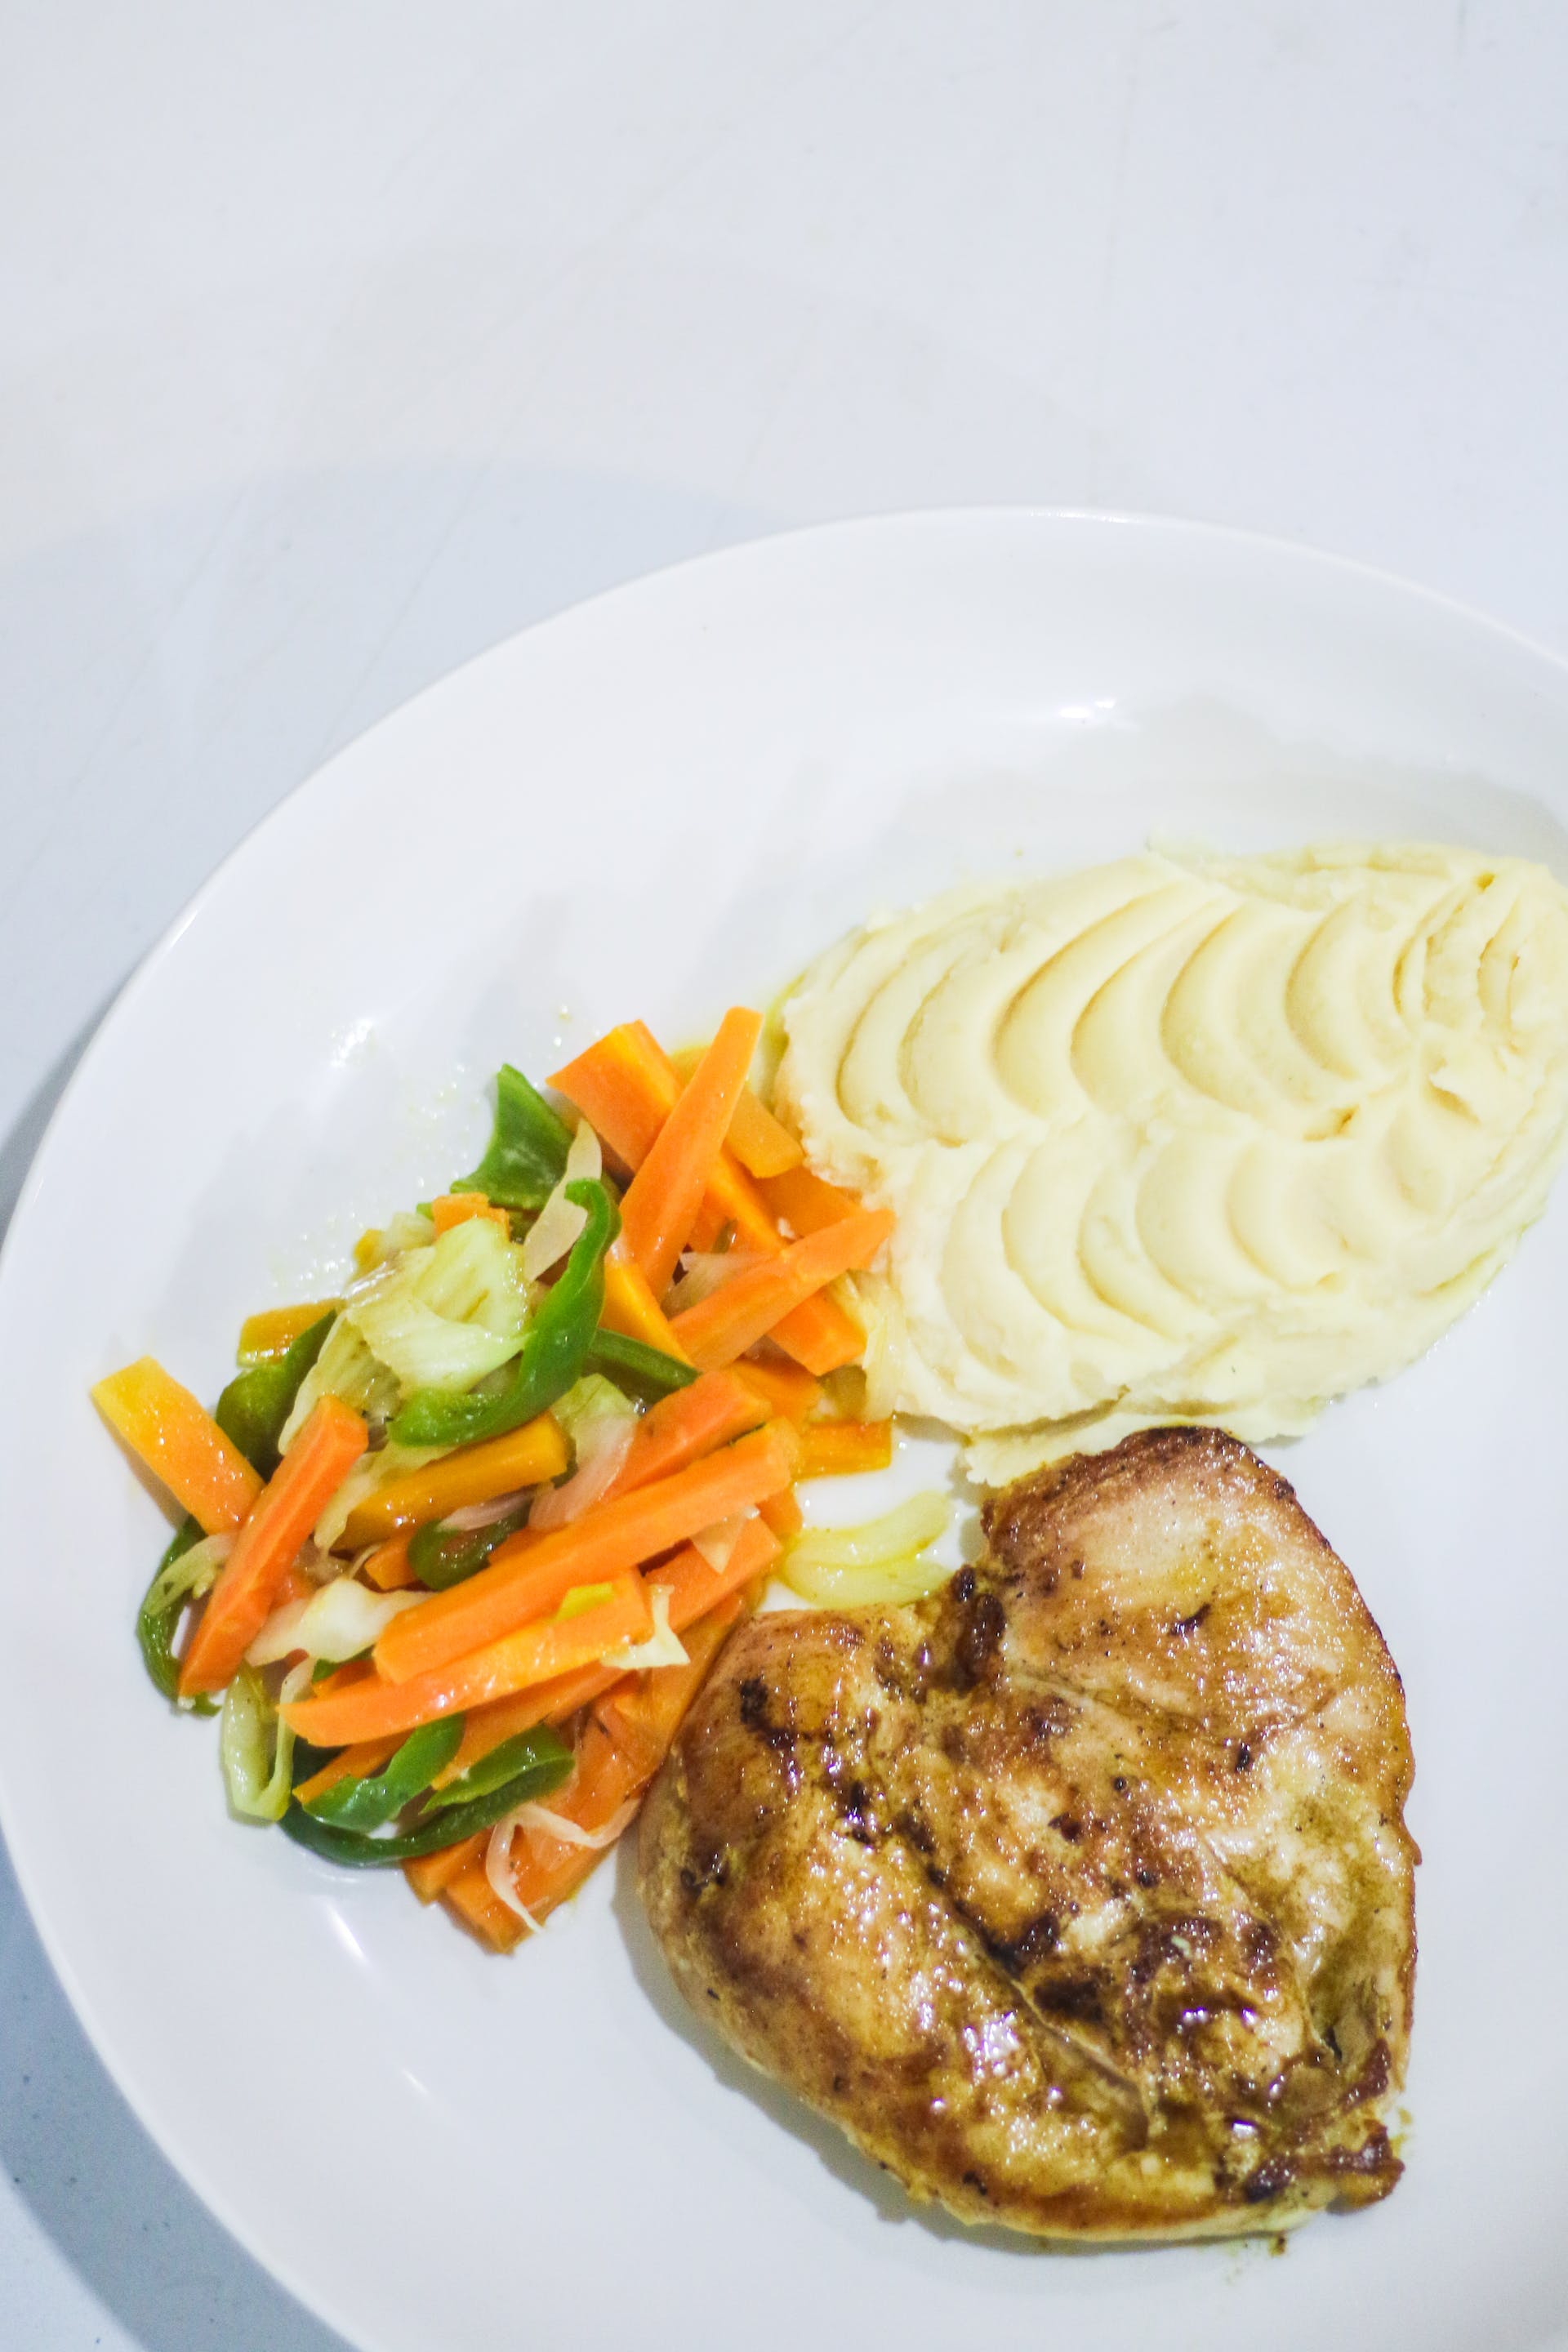 Ein Teller mit Hähnchenbrust, Gemüse und Kartoffelpüree | Quelle: Pexels